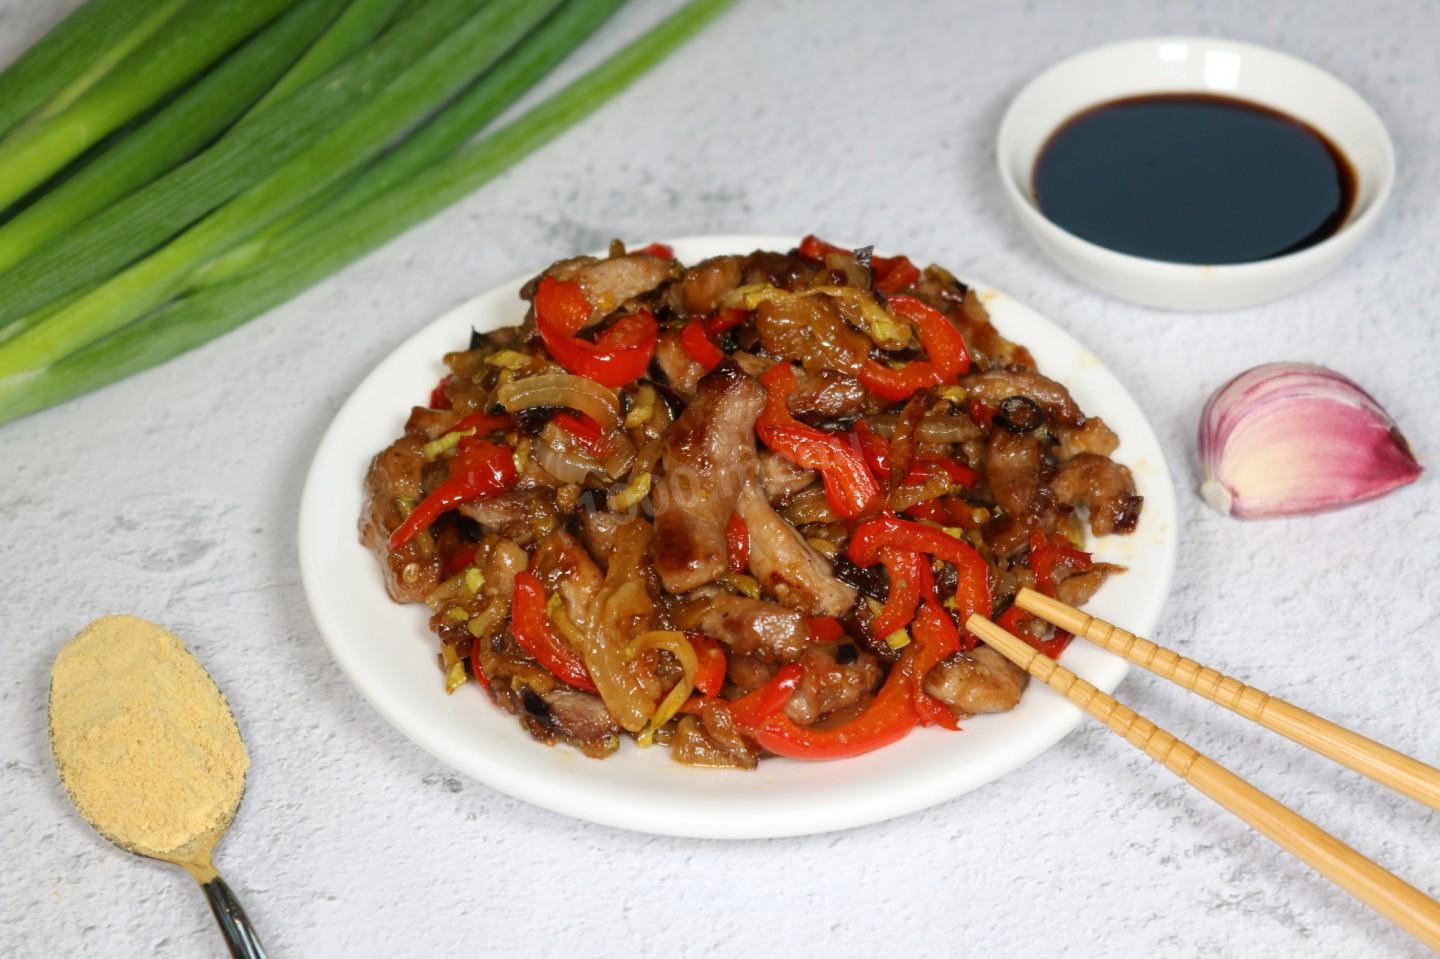 Мясо в кисло сладком соусе рецепт с фото по китайски пошагово с фото